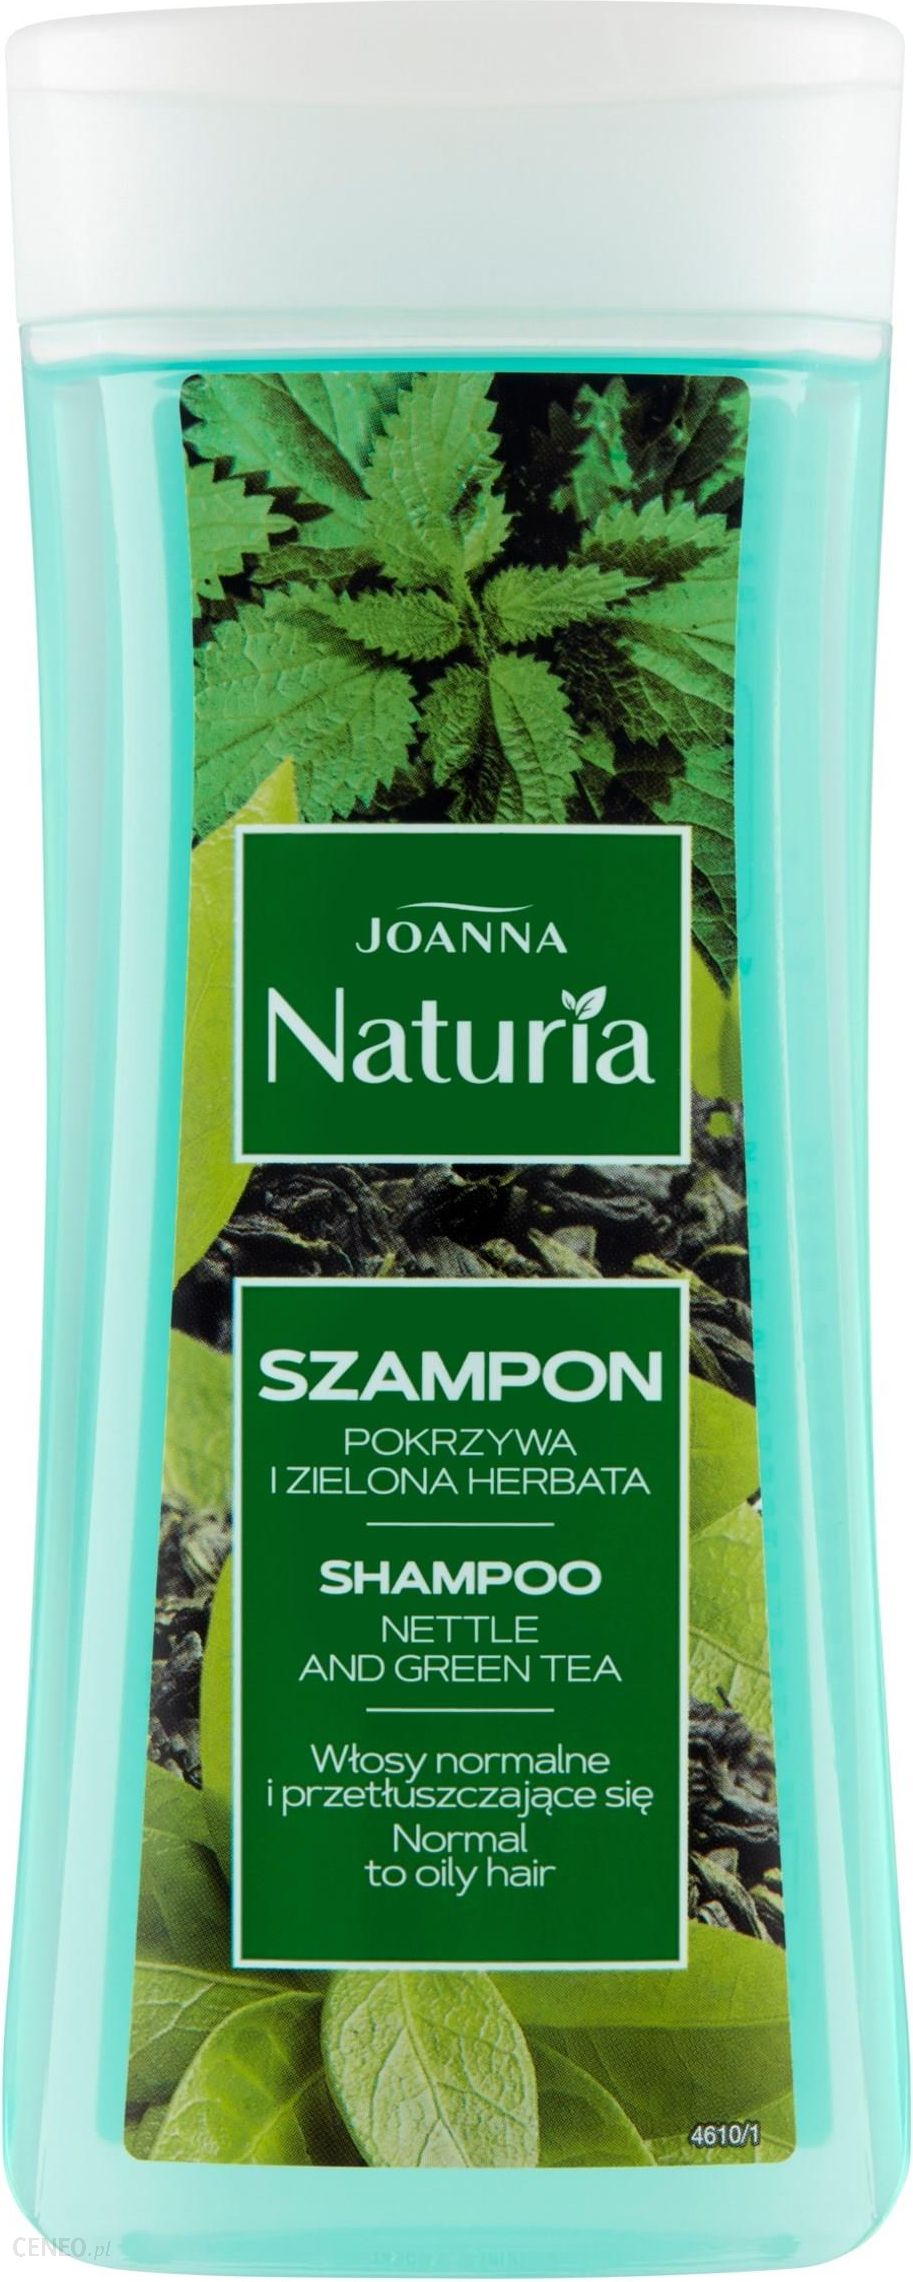 1 naturia pokrzywa i zielona herbata szampon skład